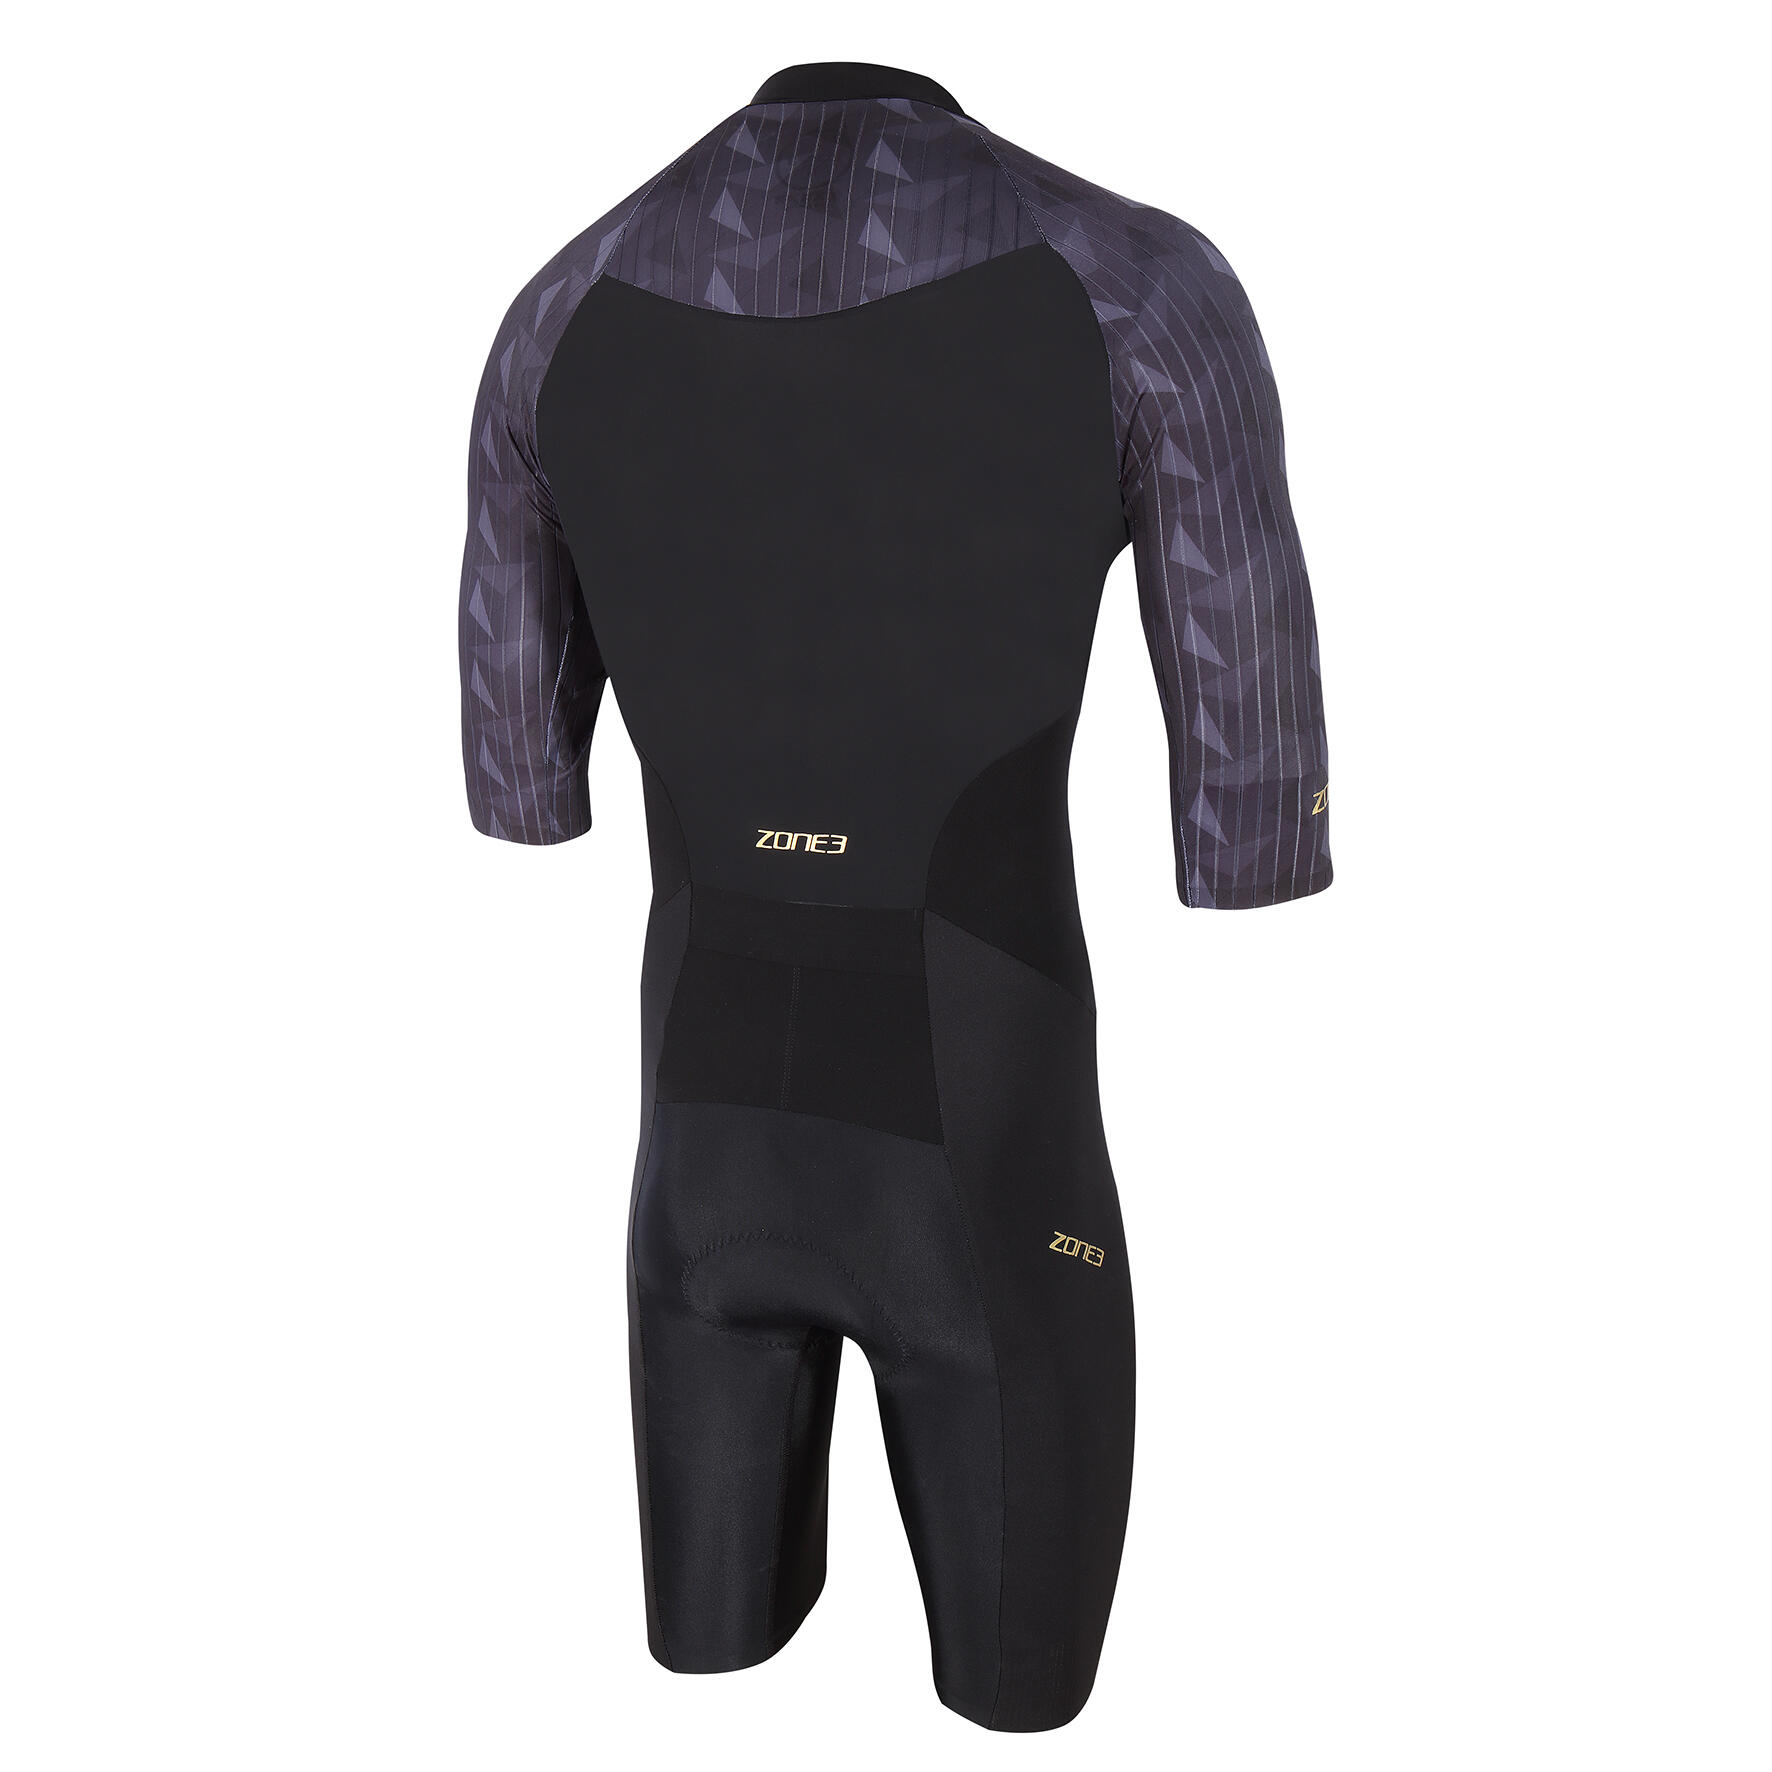 Lava Short Sleeve Trisuit Men's Black/Gold 2/5